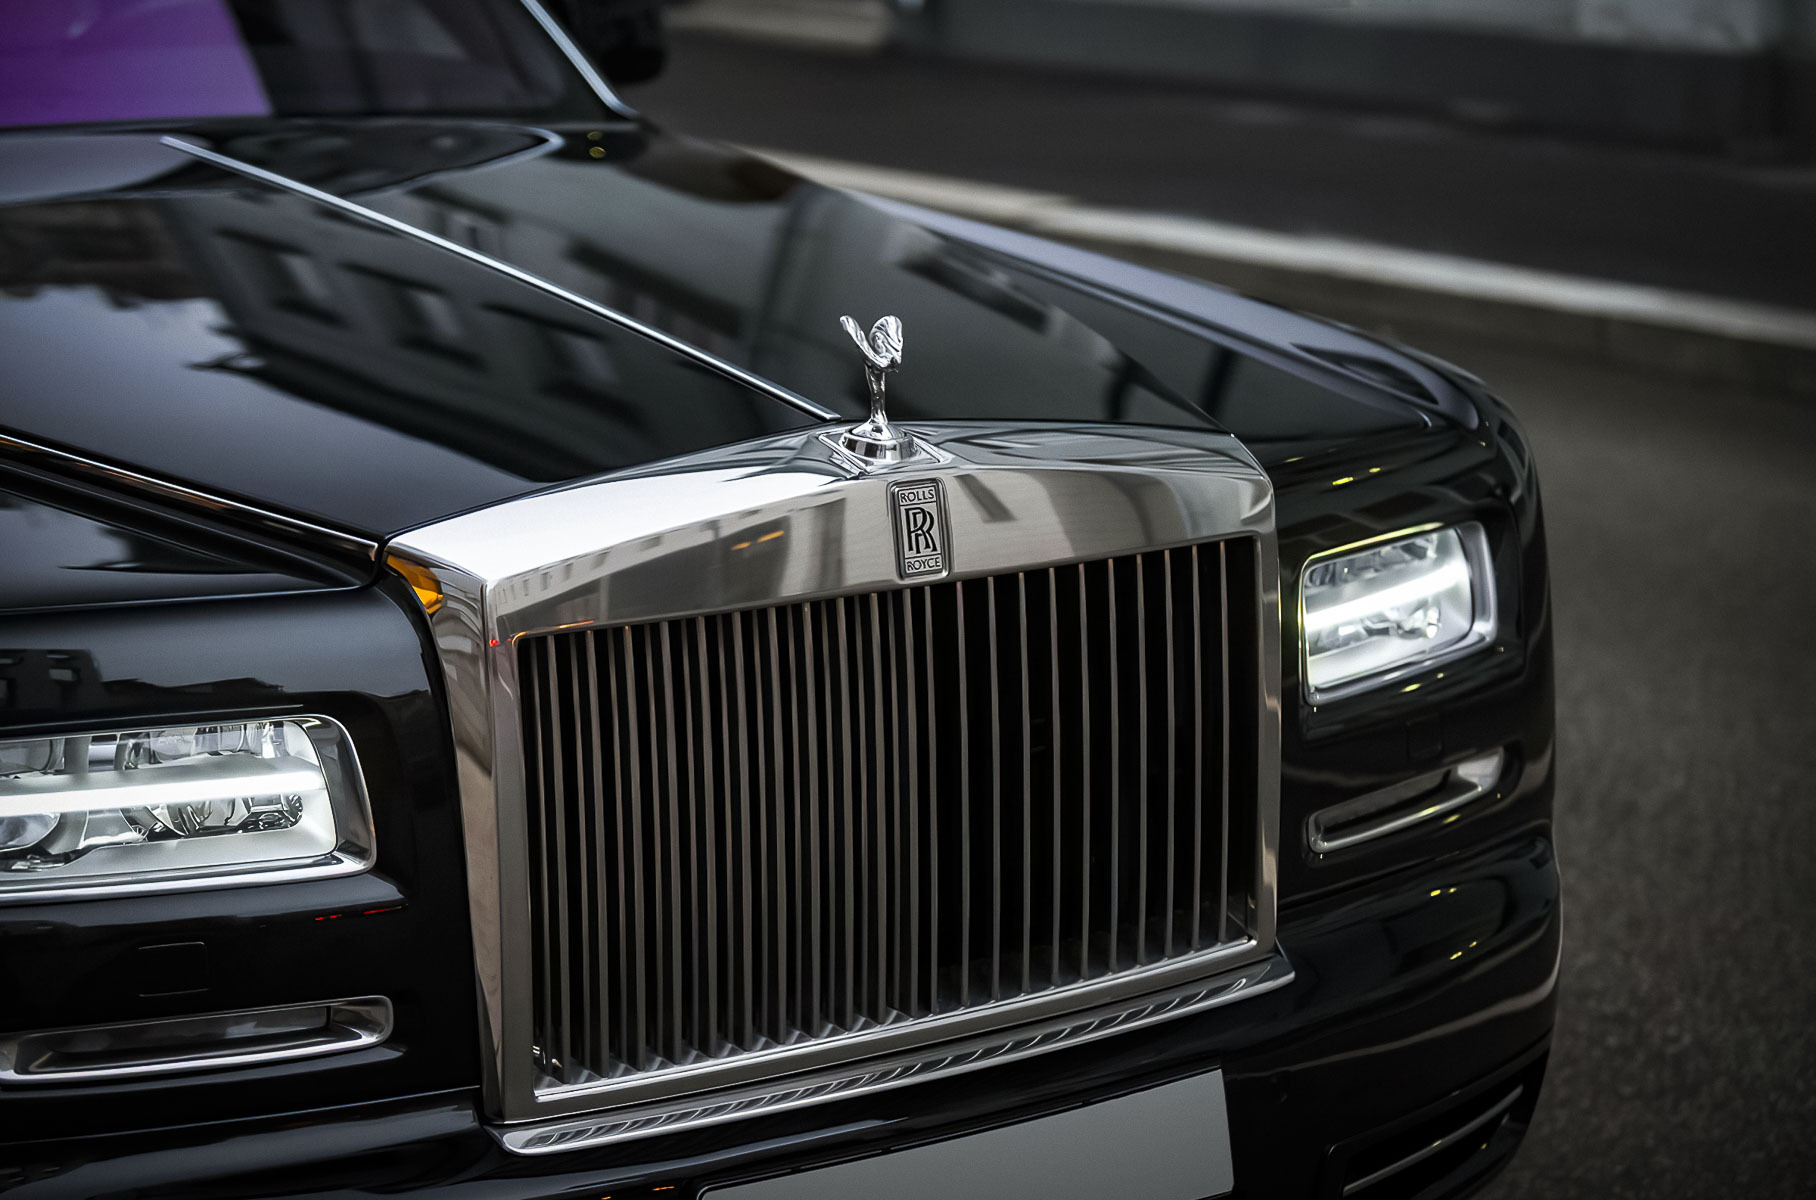 Необычную версию Rolls-Royce Phantom продают в Москве за 19 миллионов рублей